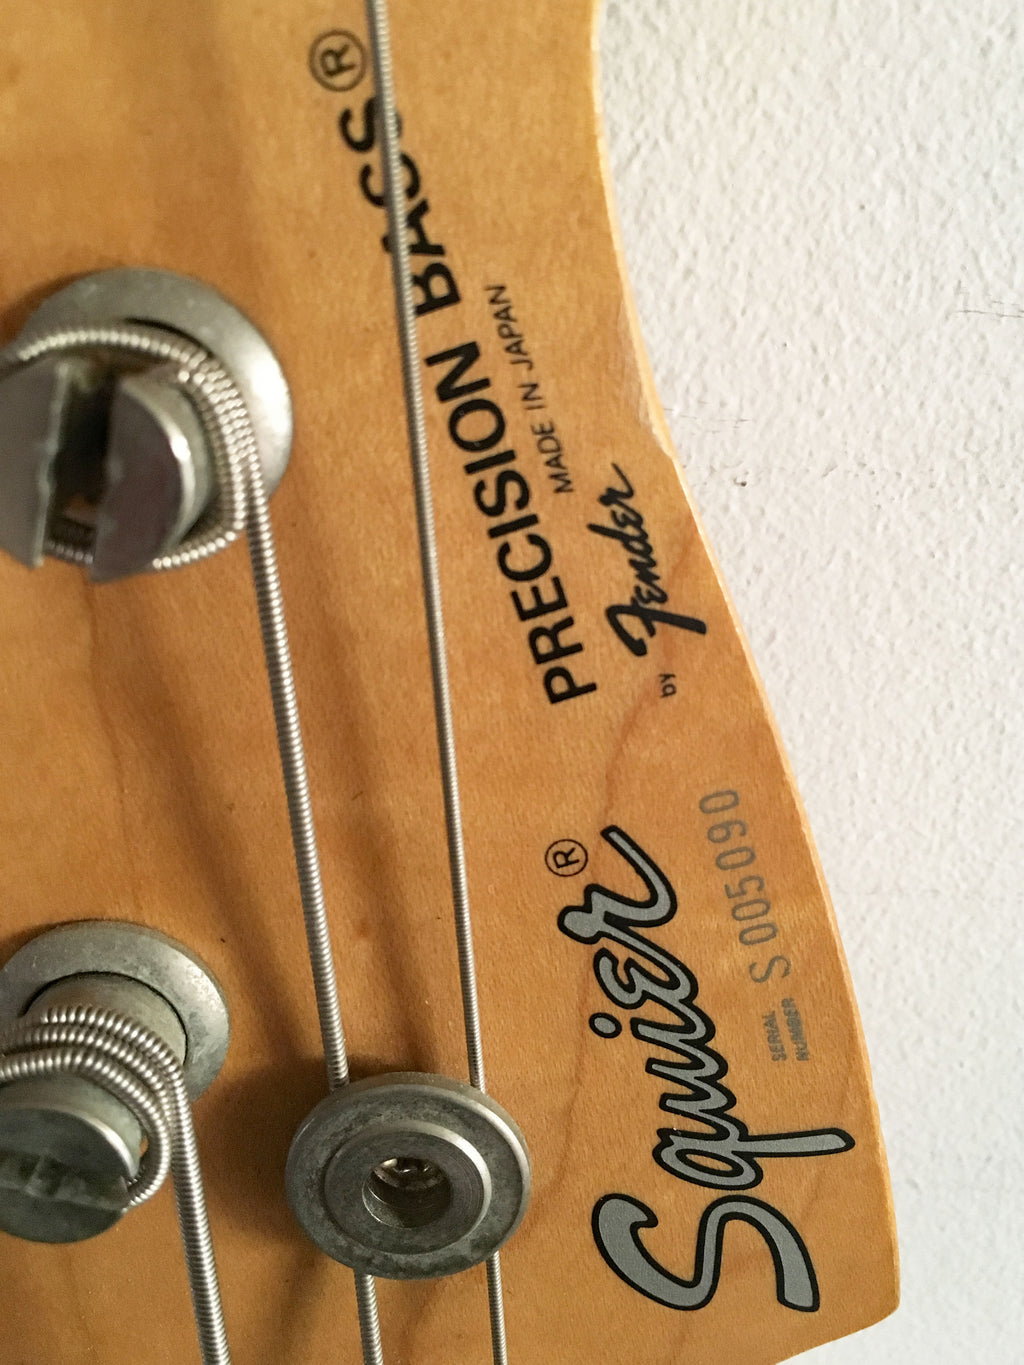 Used Squier MIJ Precision Bass '62 Reissue Sunburst 1994-5